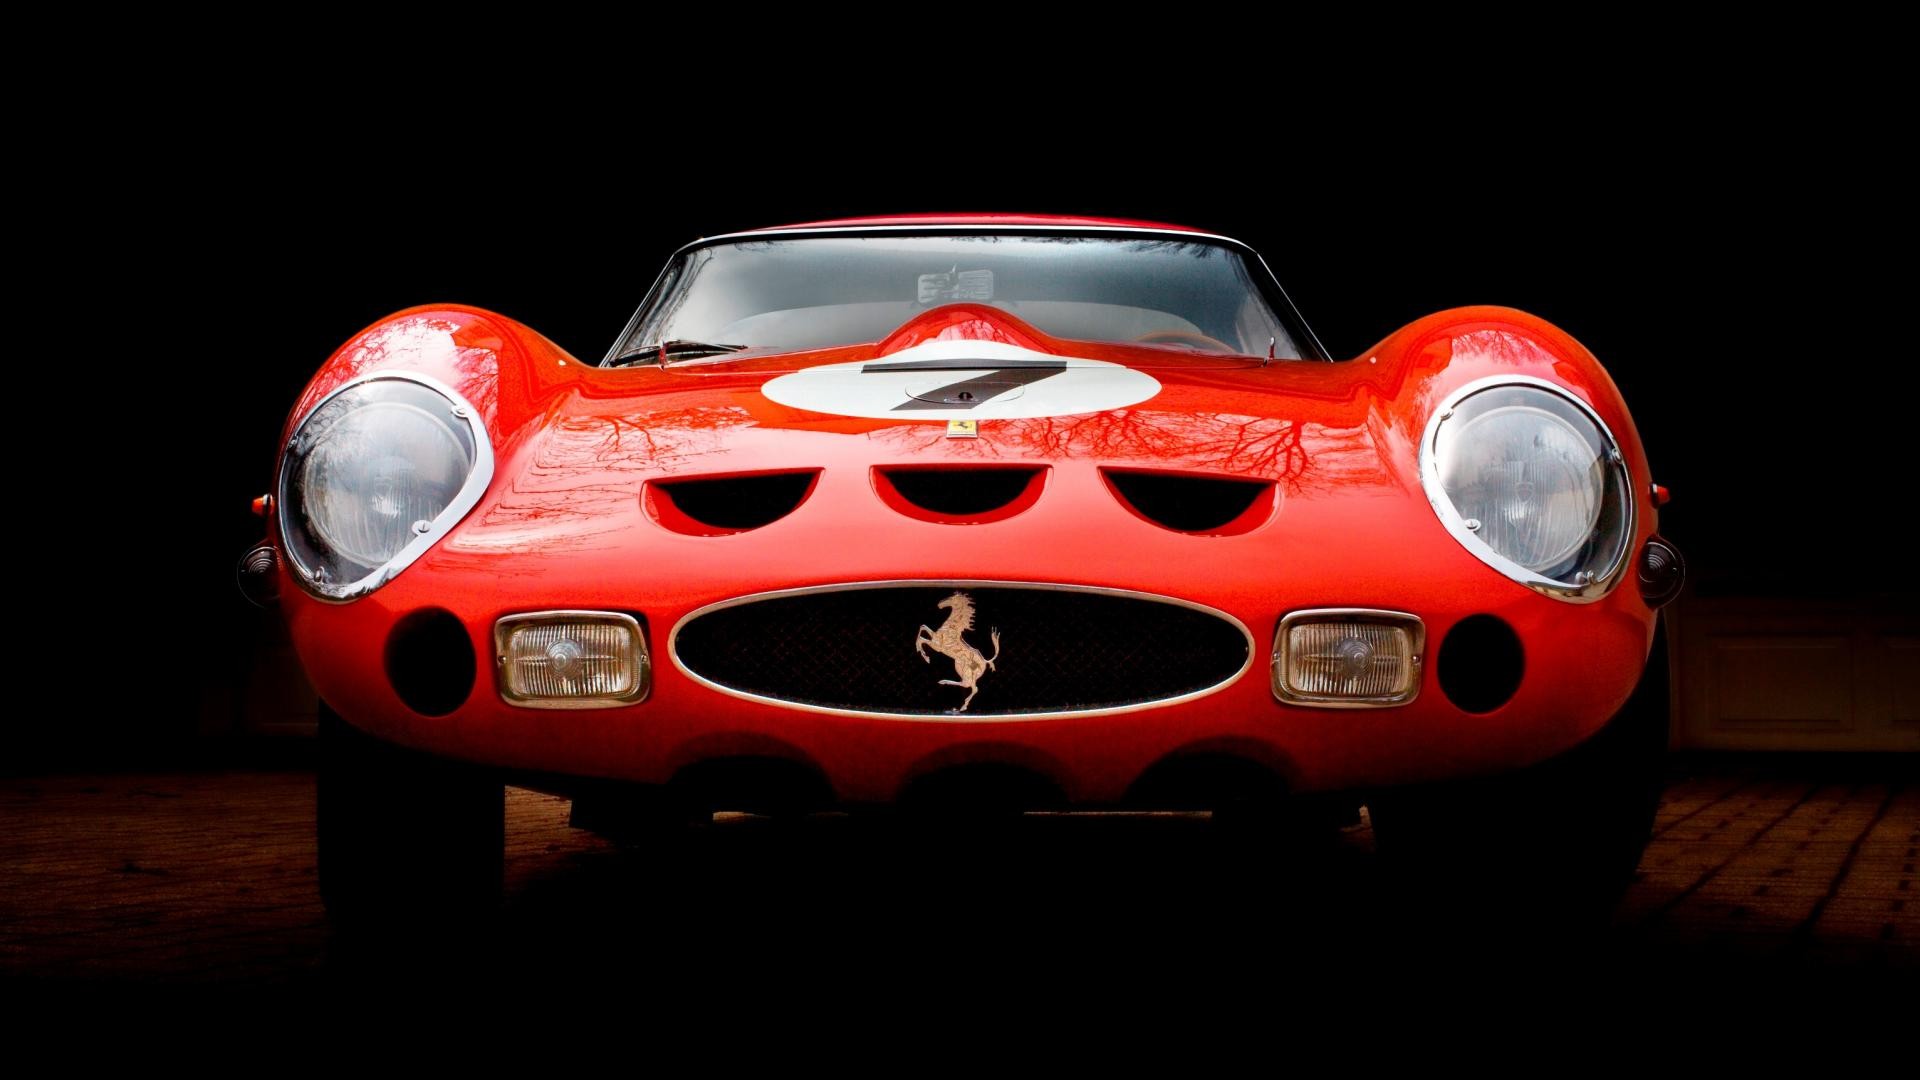 29+ Hd Old Ferrari Car Wallpapers 1080p free download